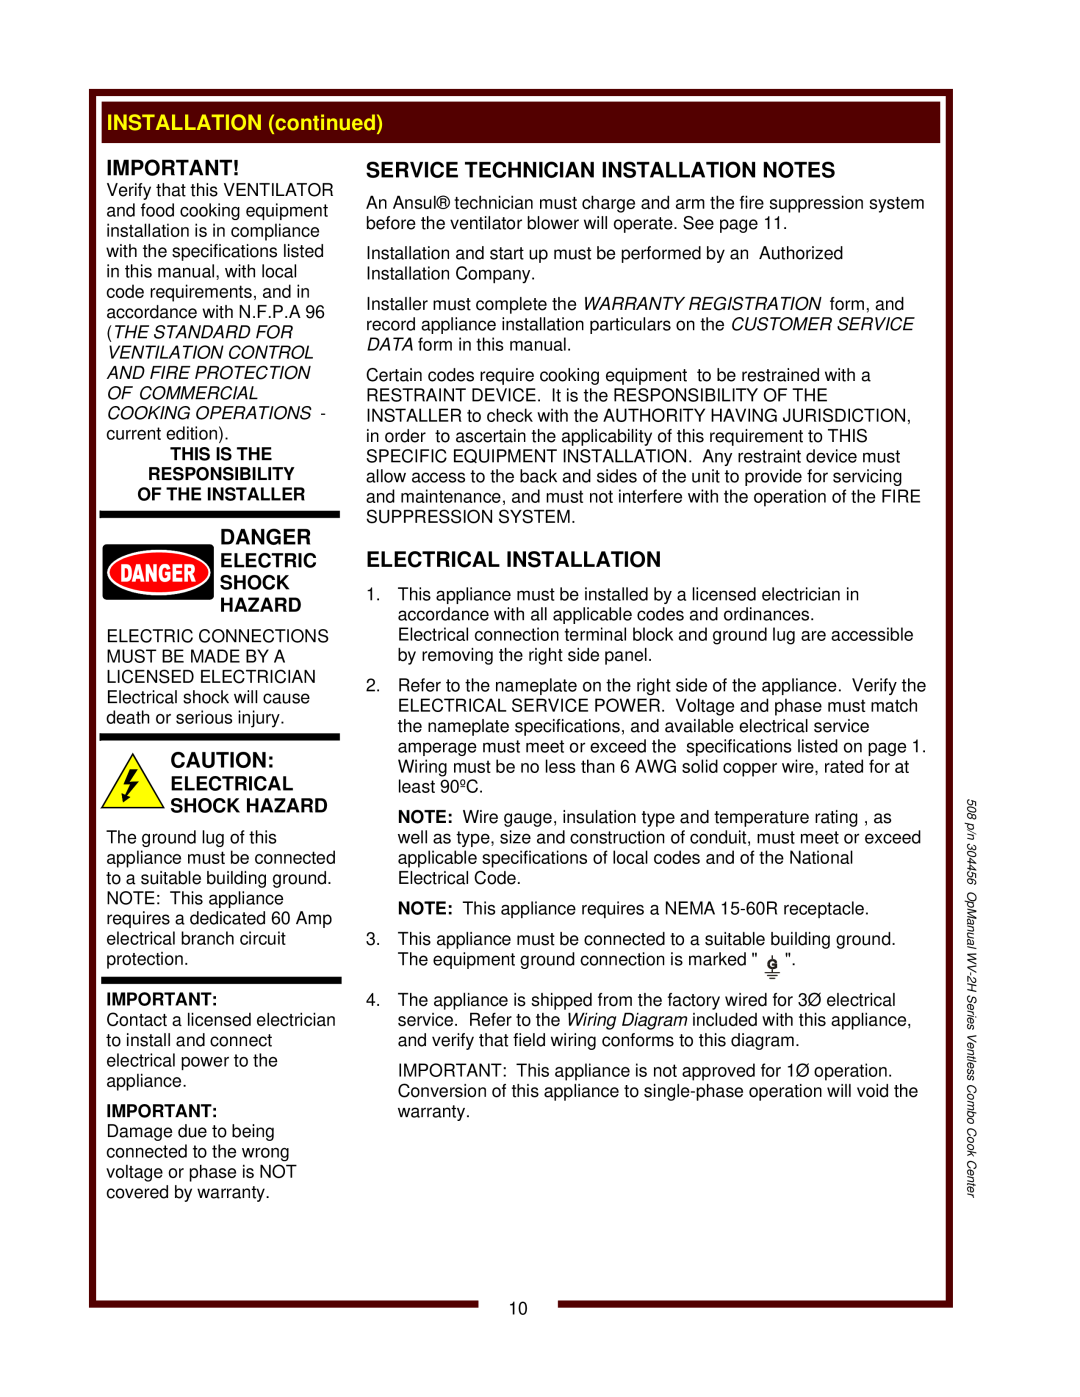 Bloomfield WV-2HSGRWT, WV-2HFGRWT operation manual 